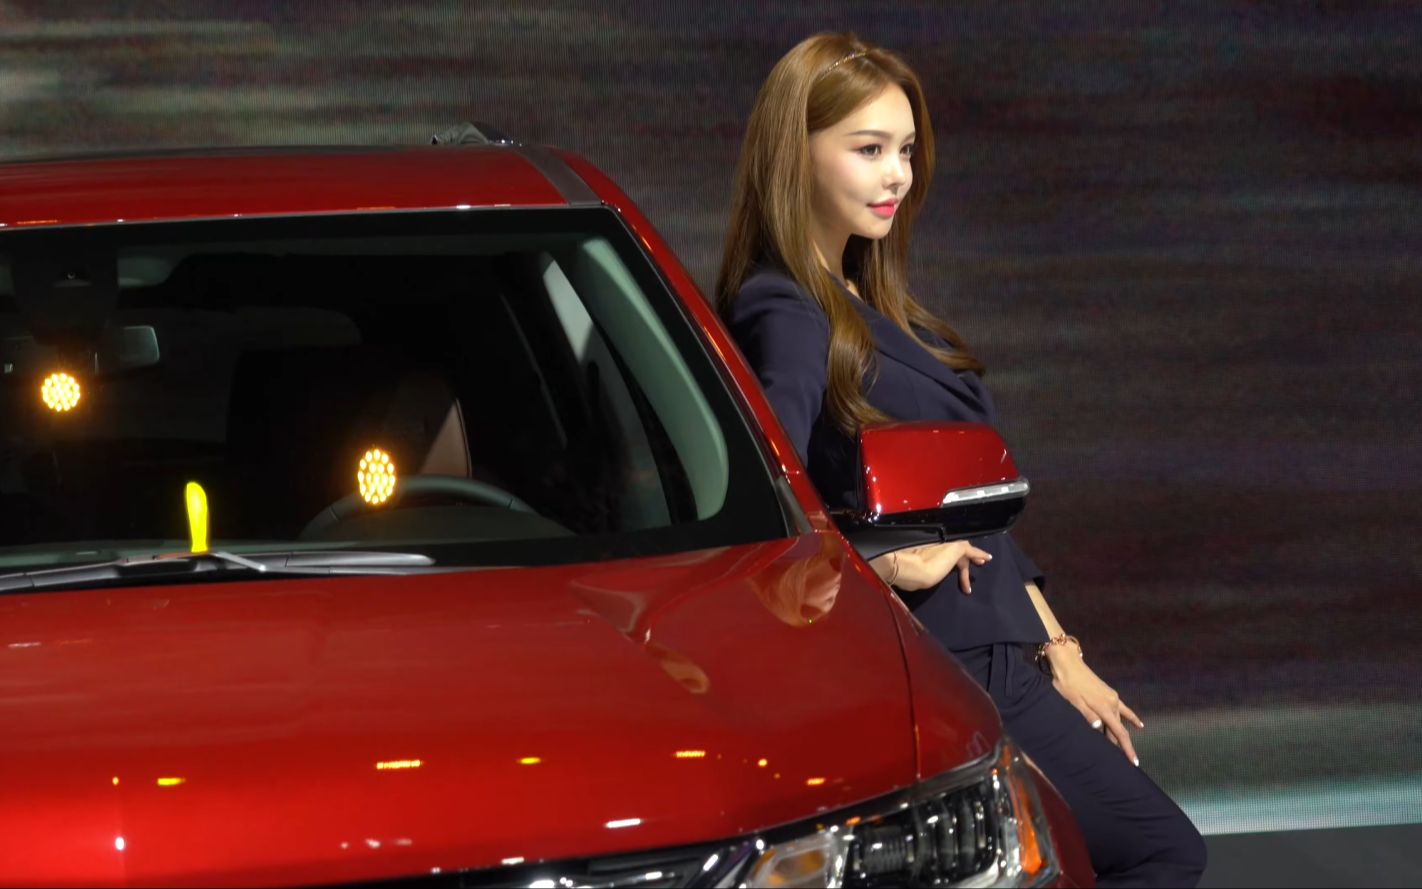 4k 2019首尔车展(seoul motor show)汽车及模特预览